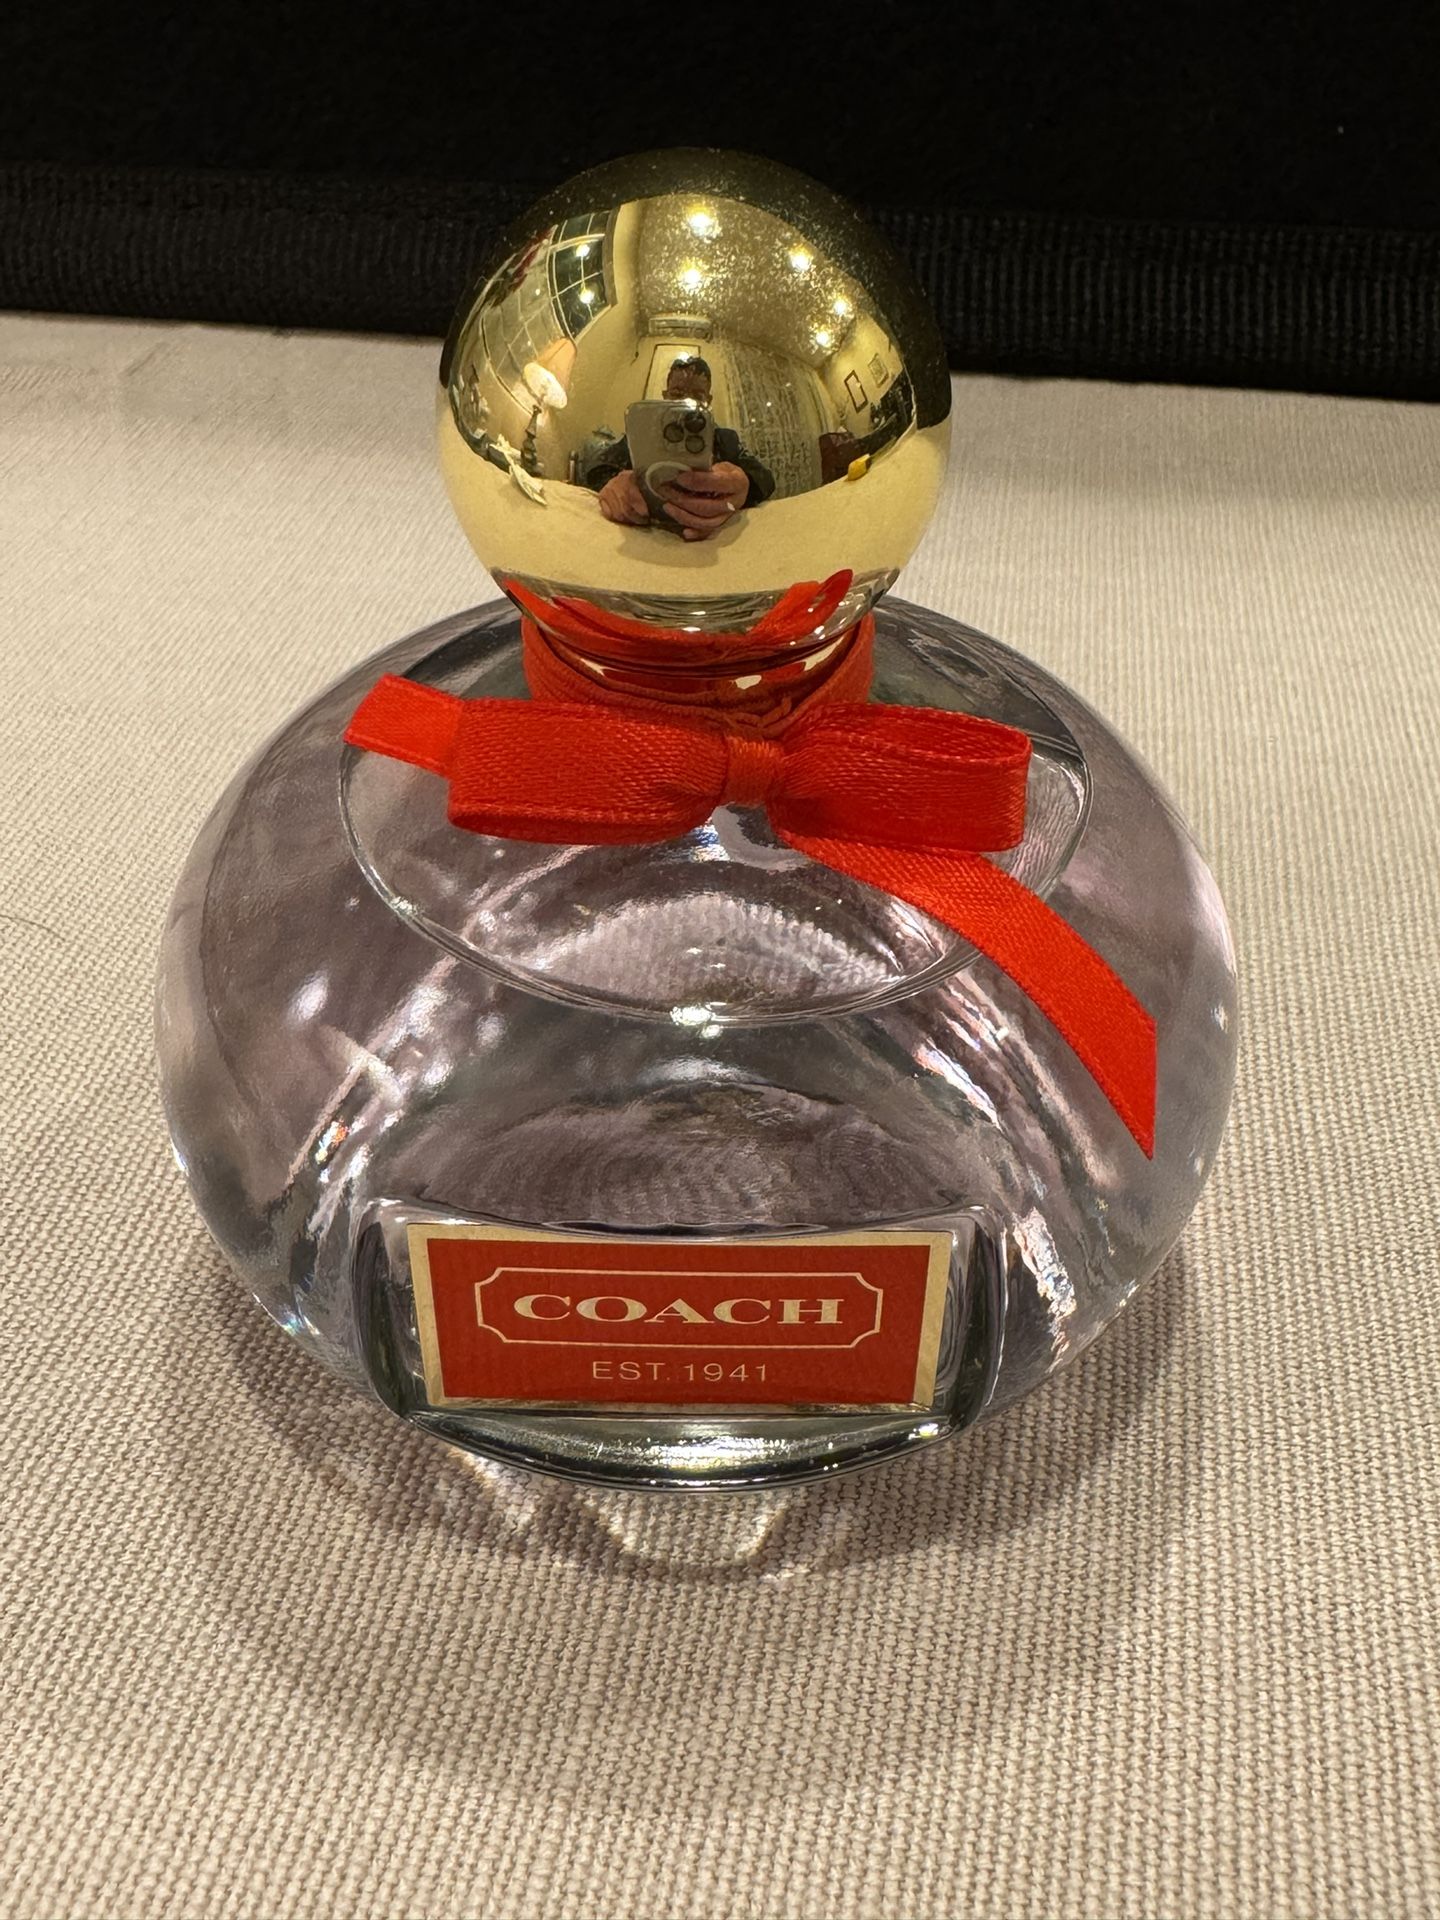 Coach perfume